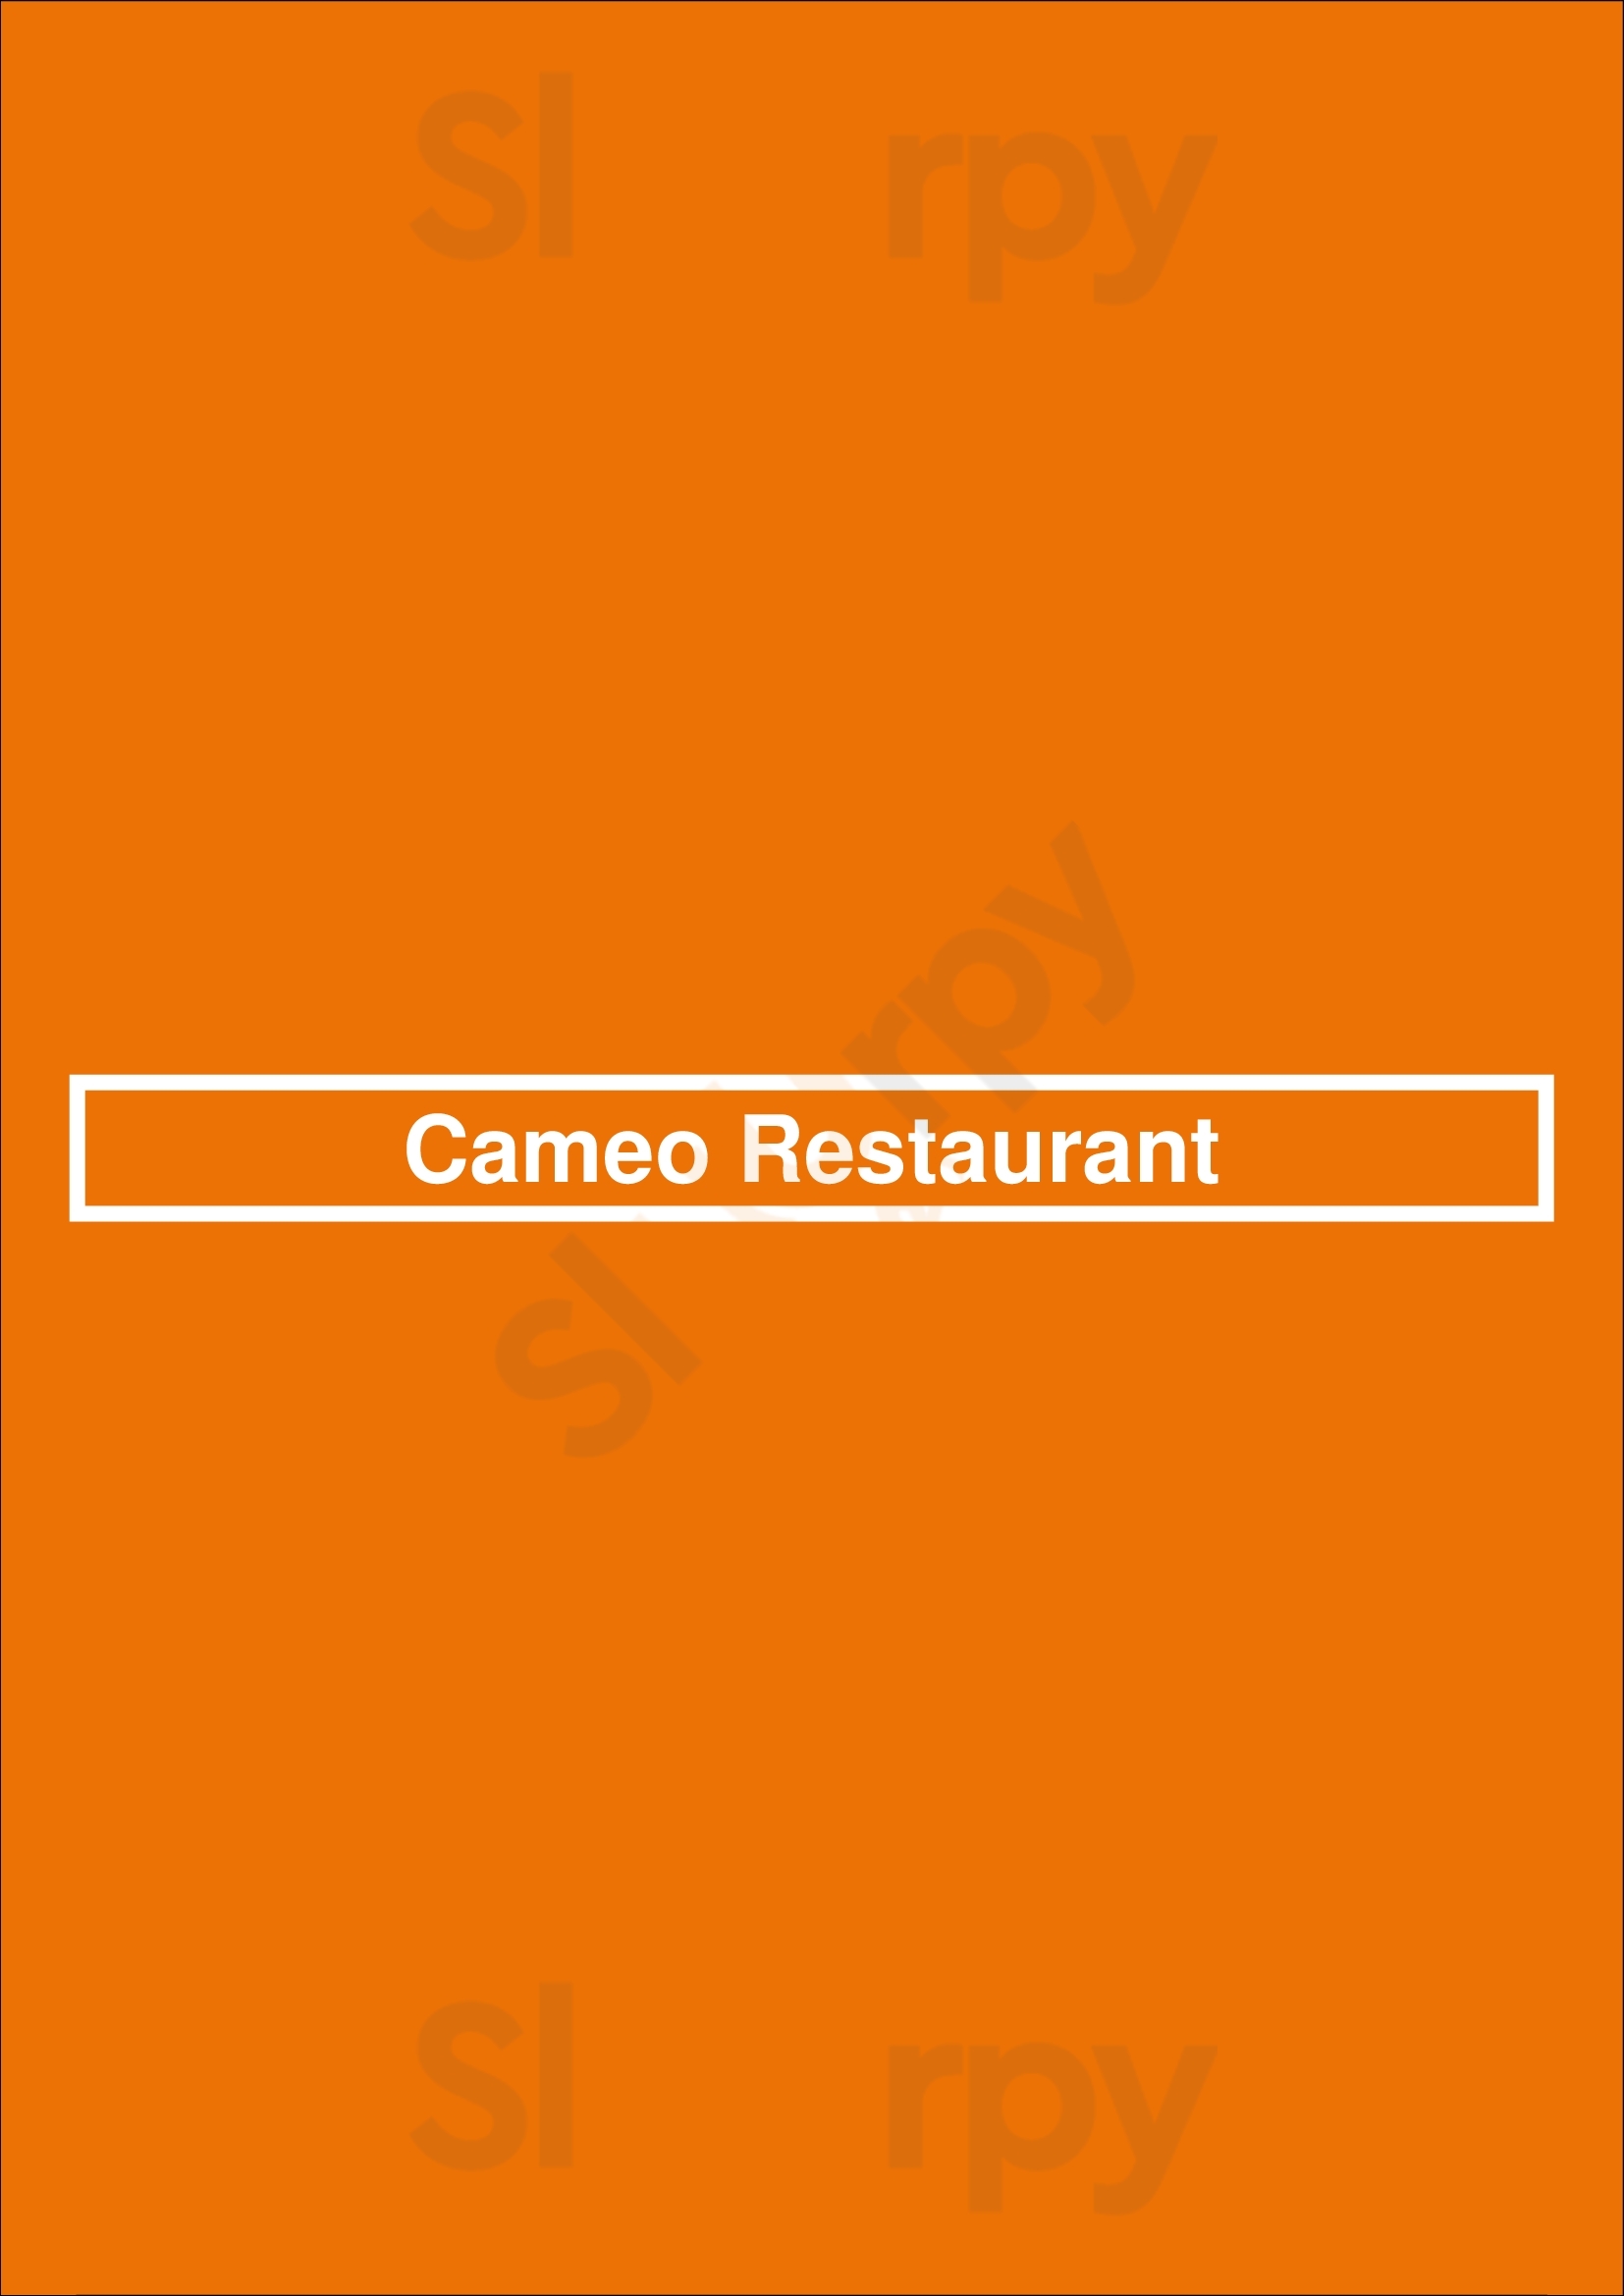 Cameo Restaurant Rochester Menu - 1